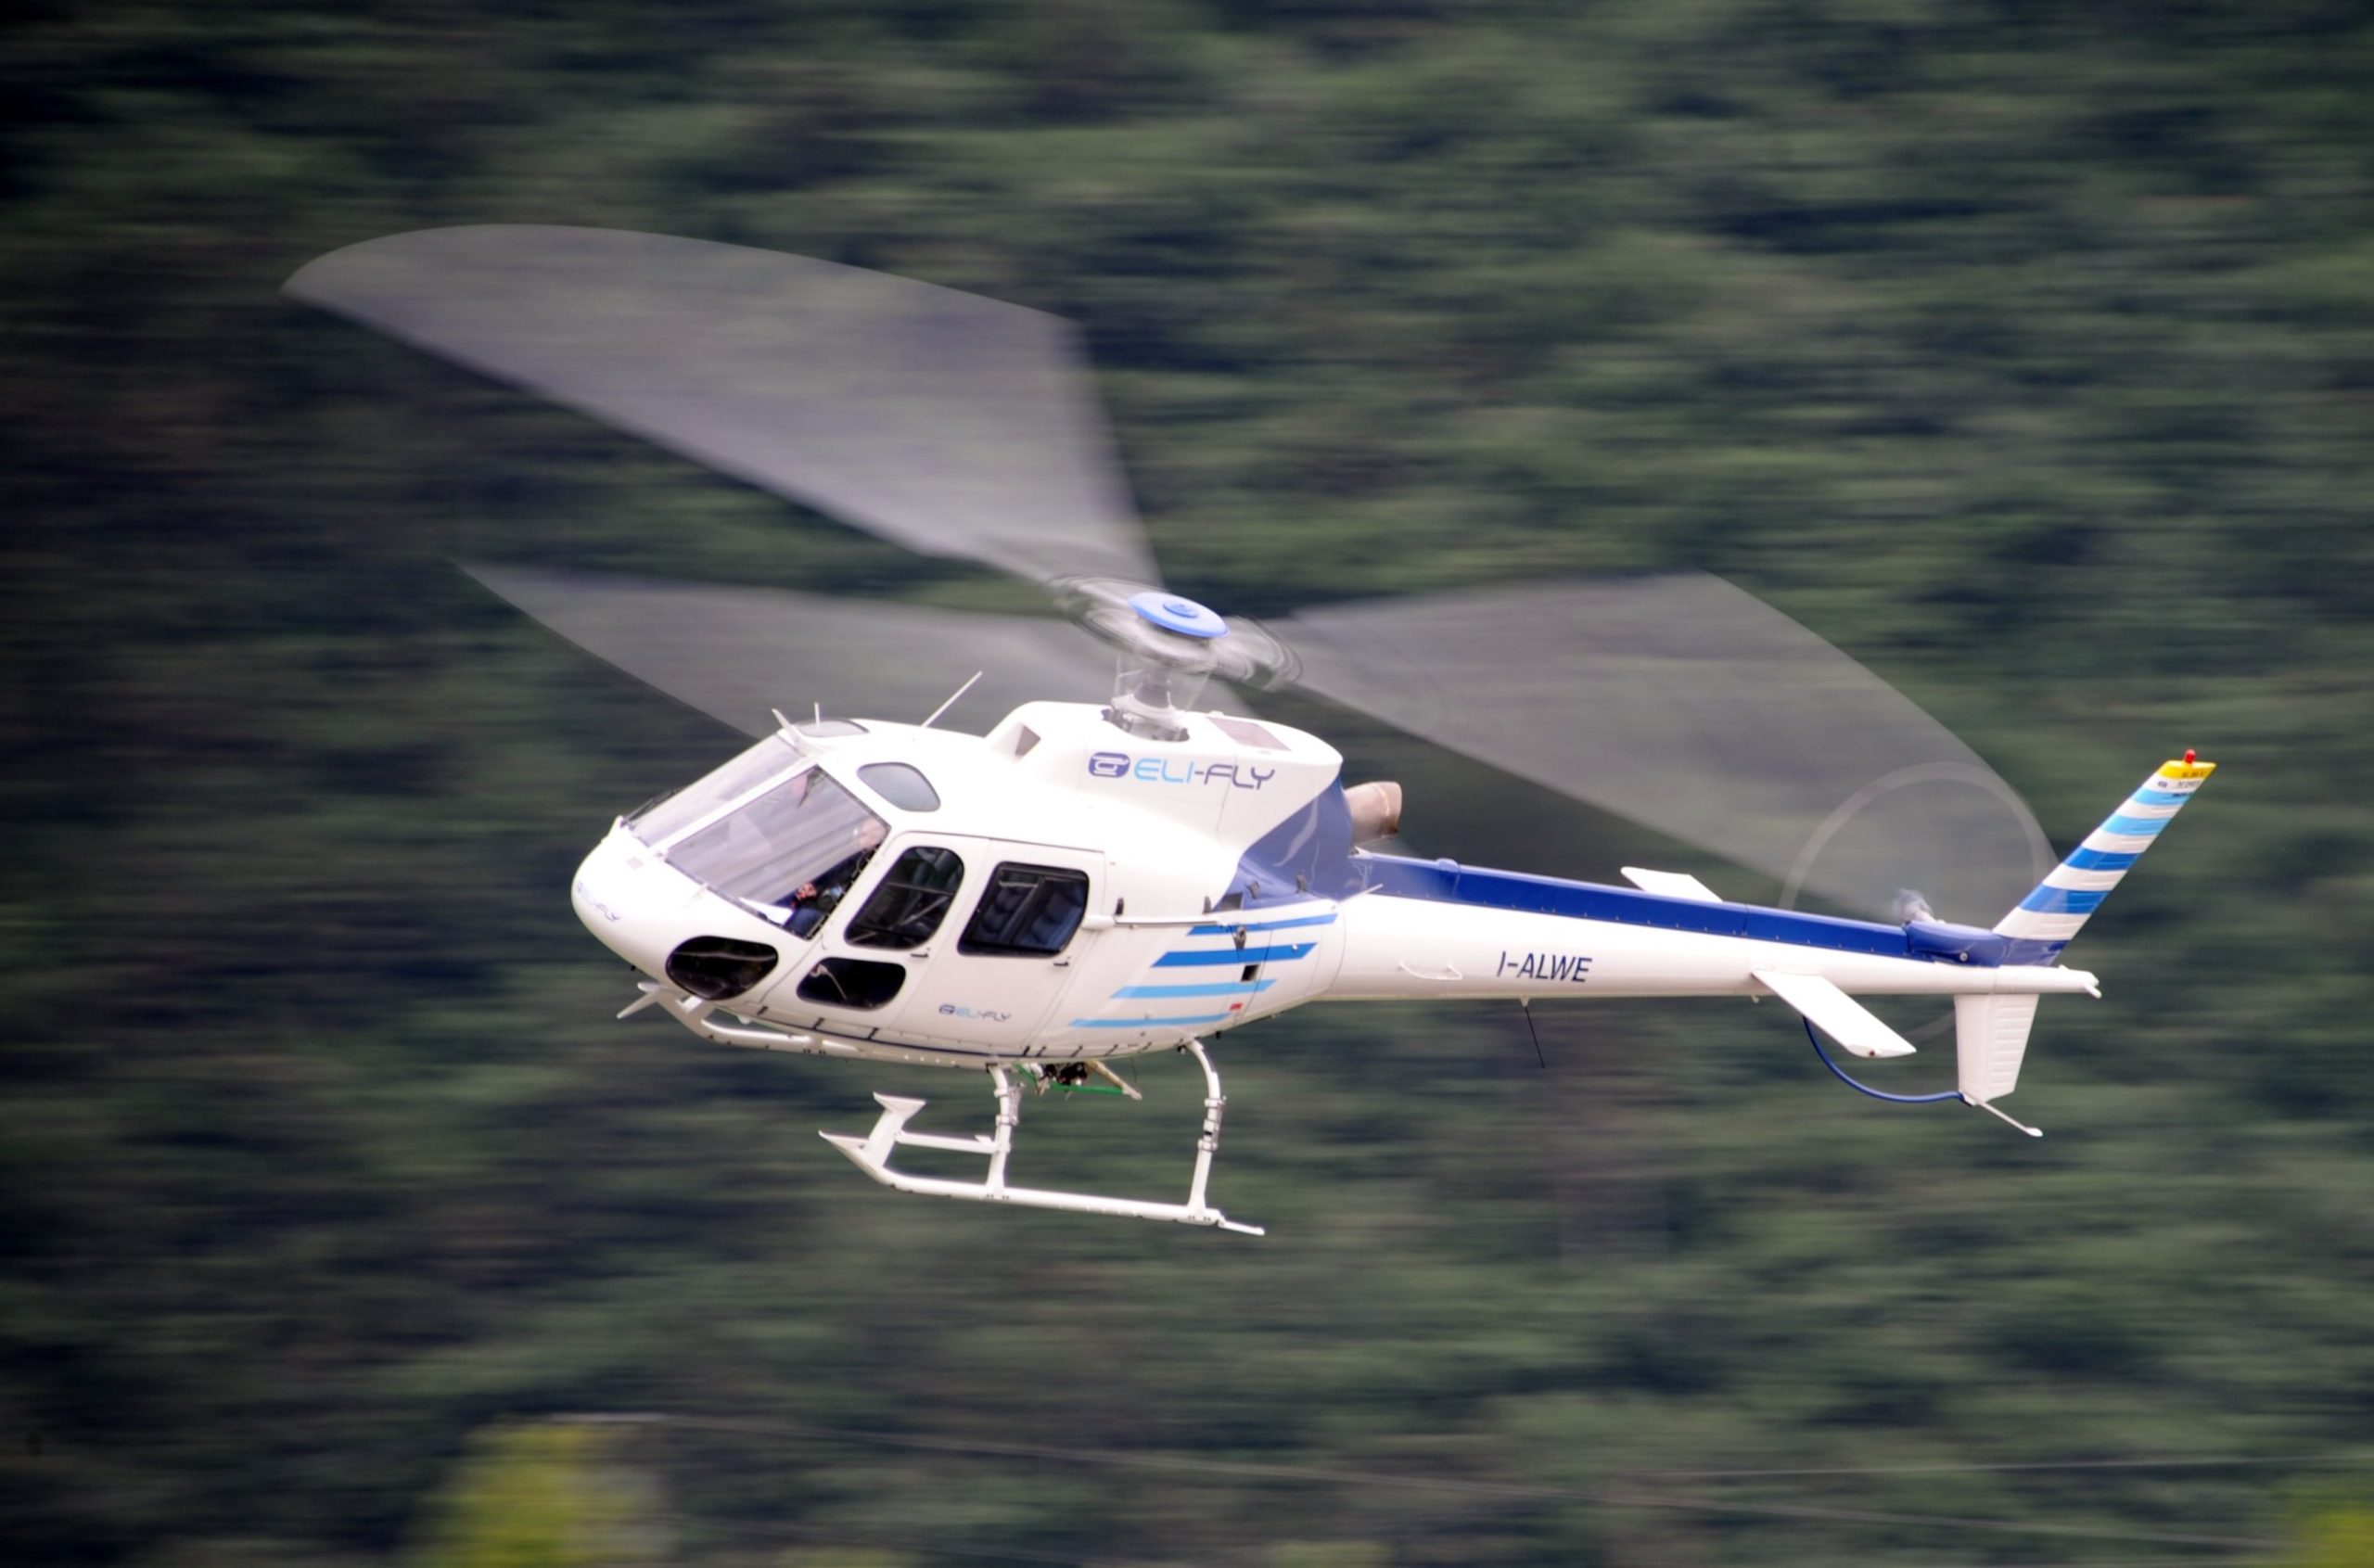 L'hélicoptère AS350 pour le transport de colis au niveau mondial